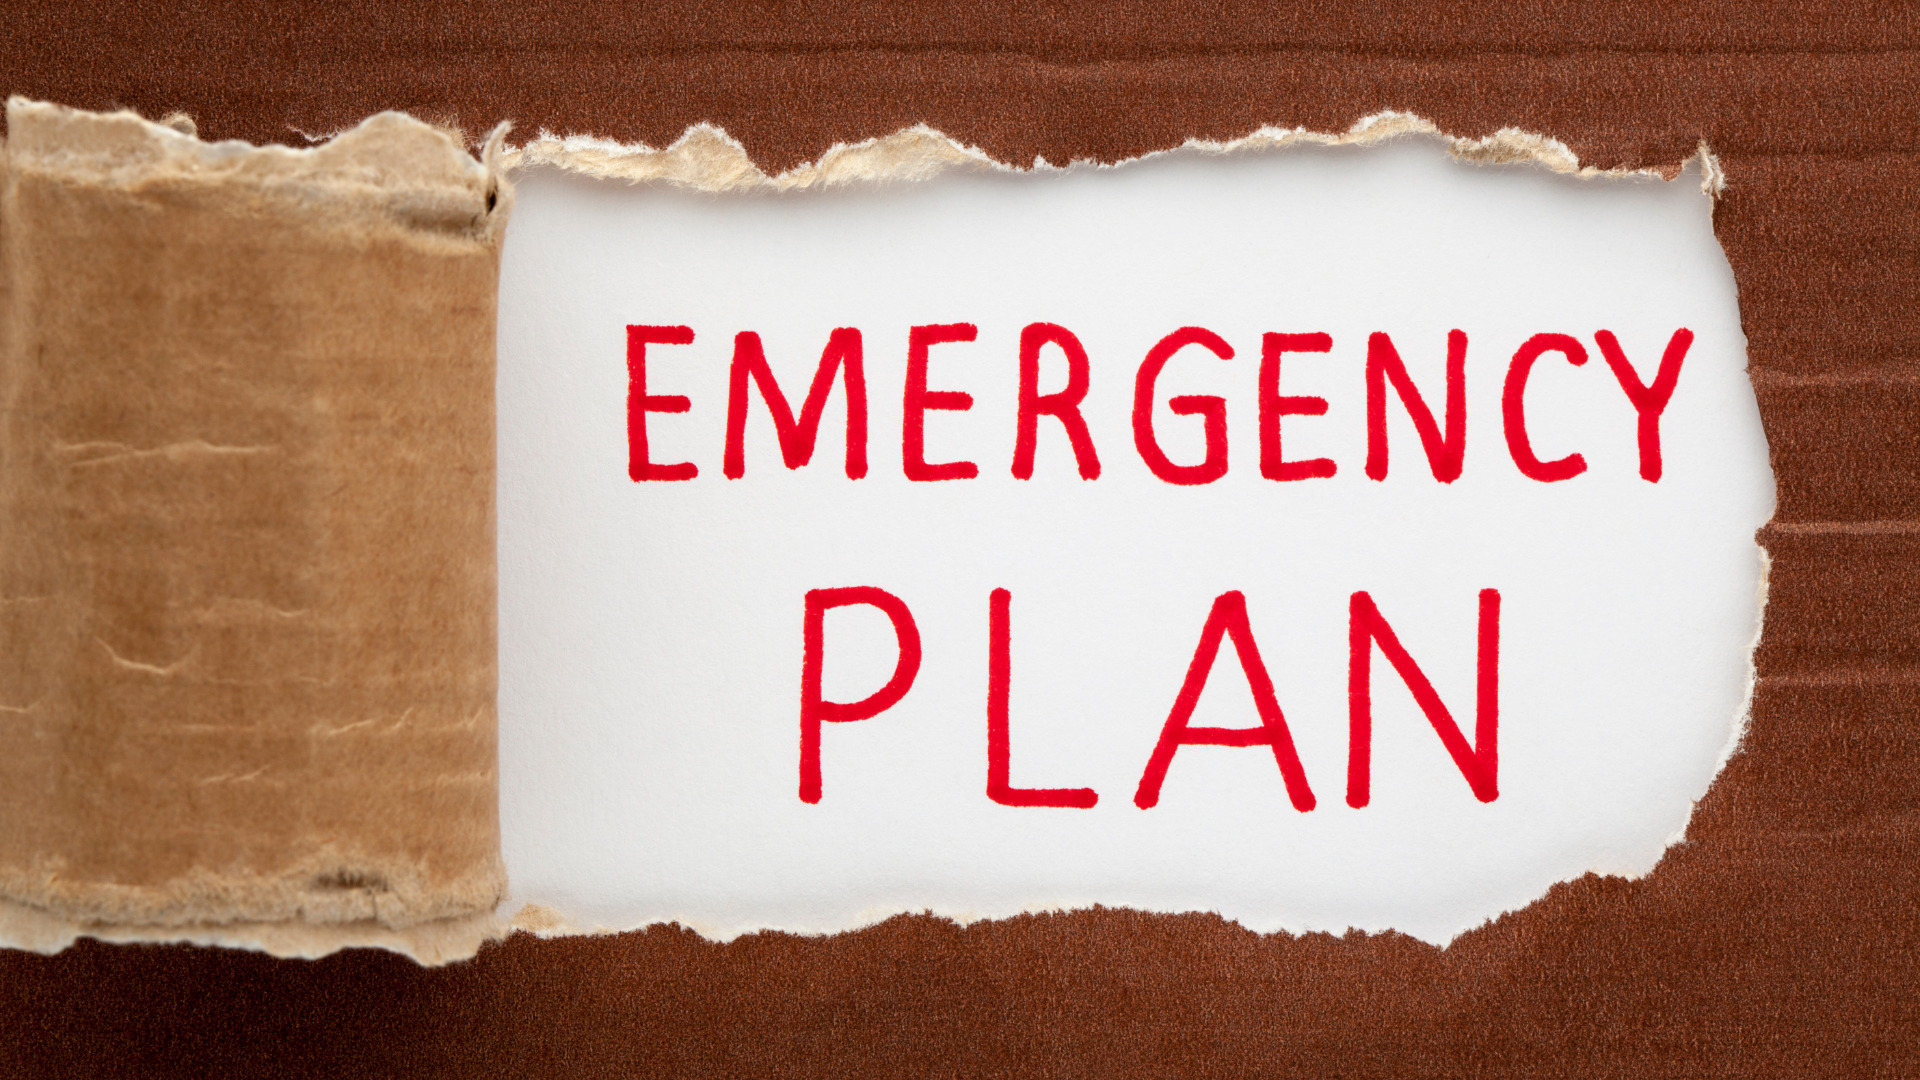 Create an emergency plan